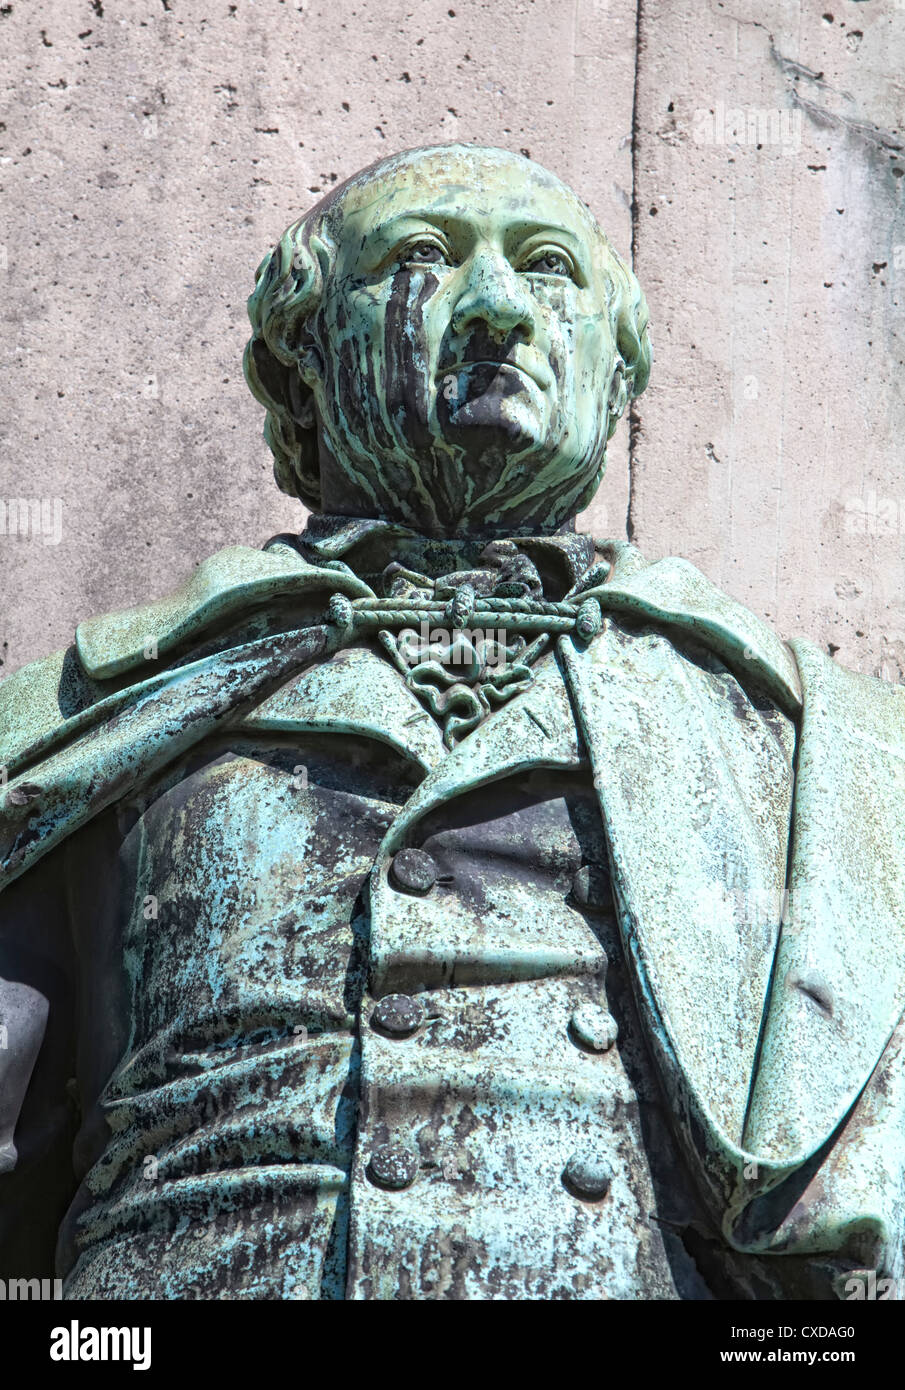 Estatua de Karl Sigmund Franz Freiherr von Stein zum Altenstein, 1770-1840, político prusiano, Colonia, Alemania, Europa Foto de stock